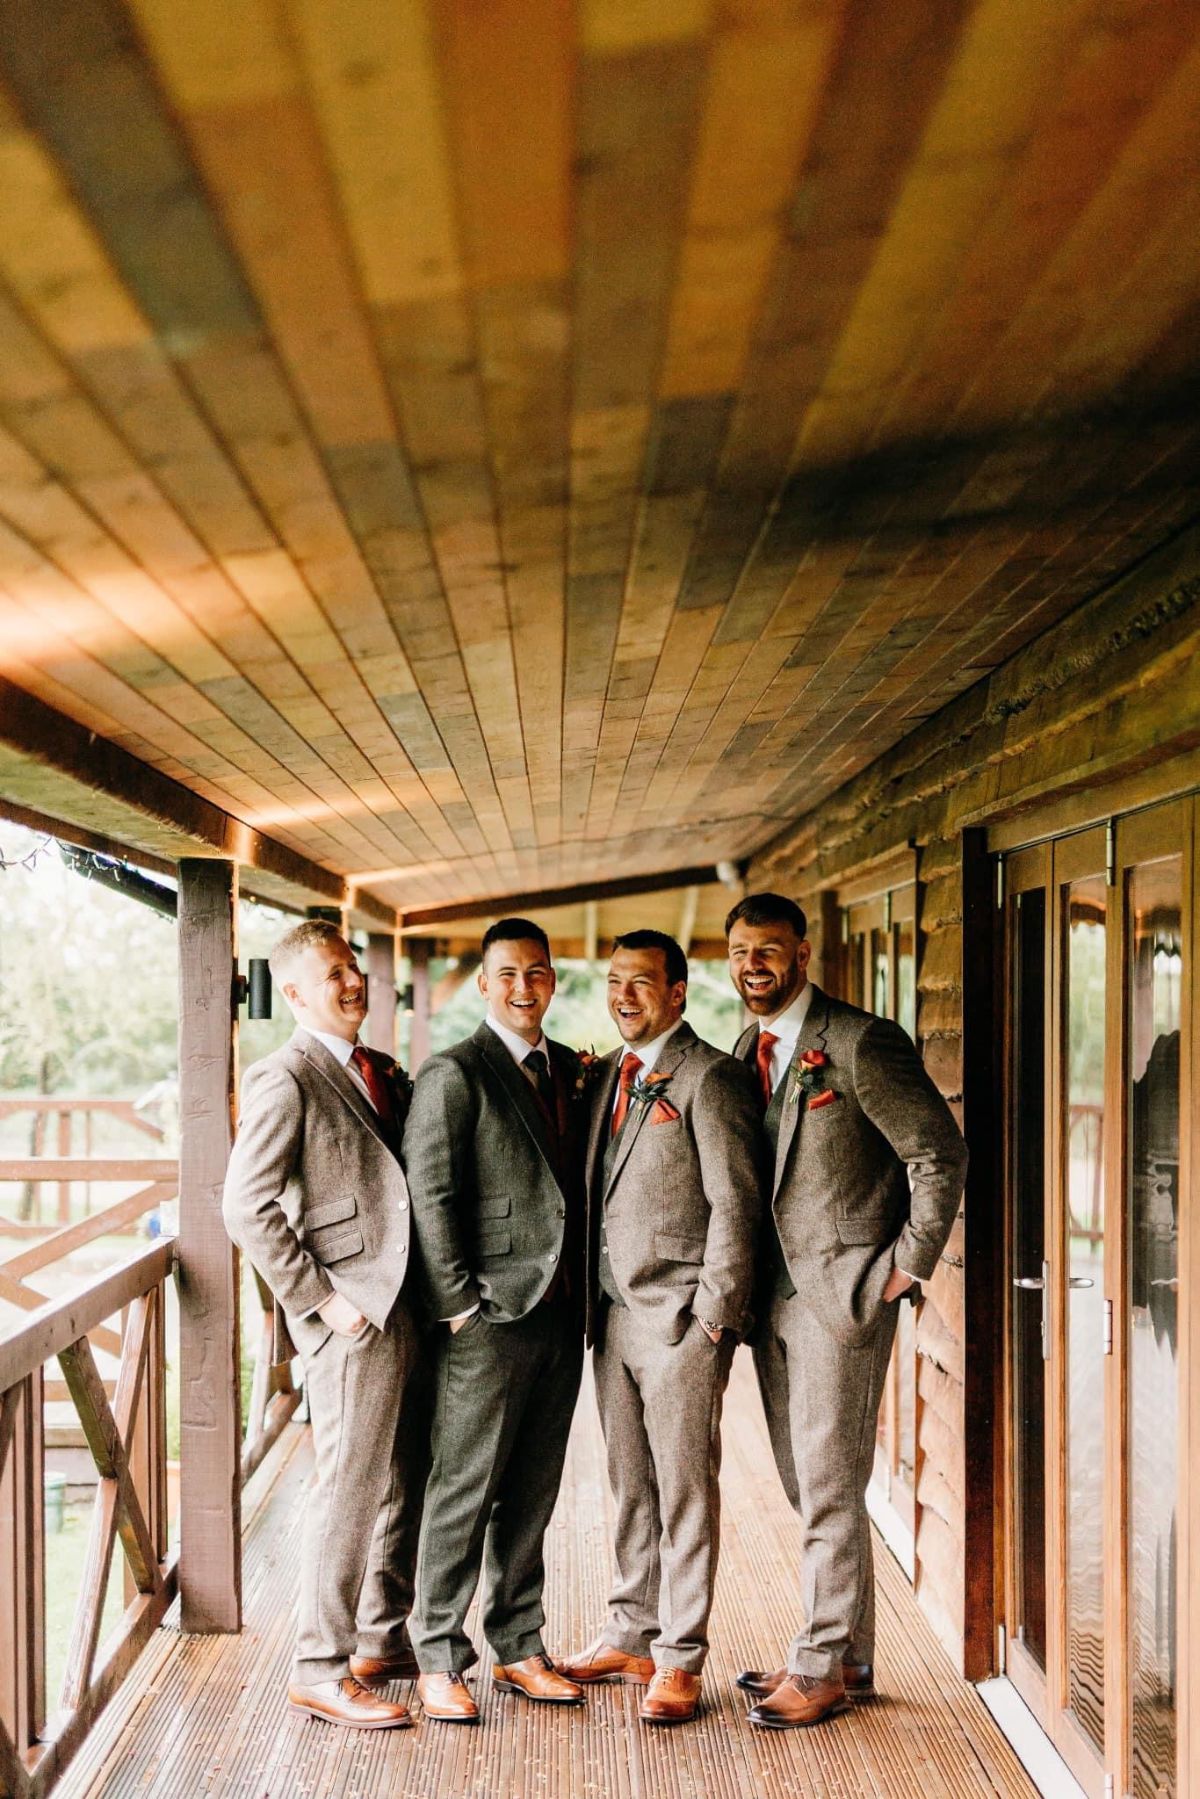 Jordan and his groomsmen